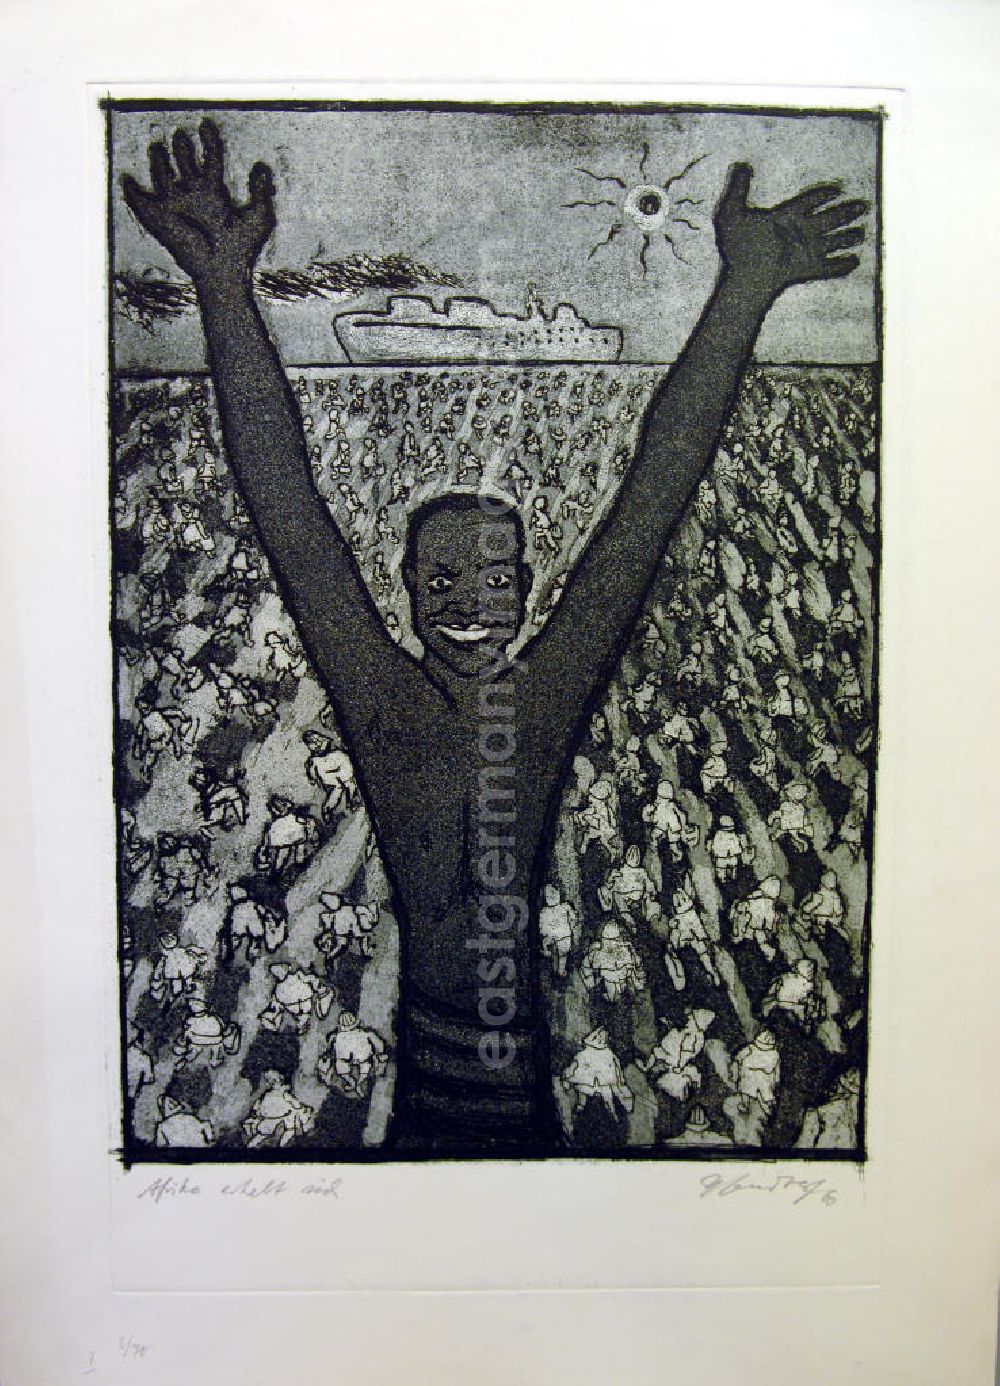 Berlin: Grafik von Herbert Sandberg Afrika erhebt sich aus dem Jahr 1960, 30,5x42,9cm Aquatintaradierung, handsigniert, I 2/7